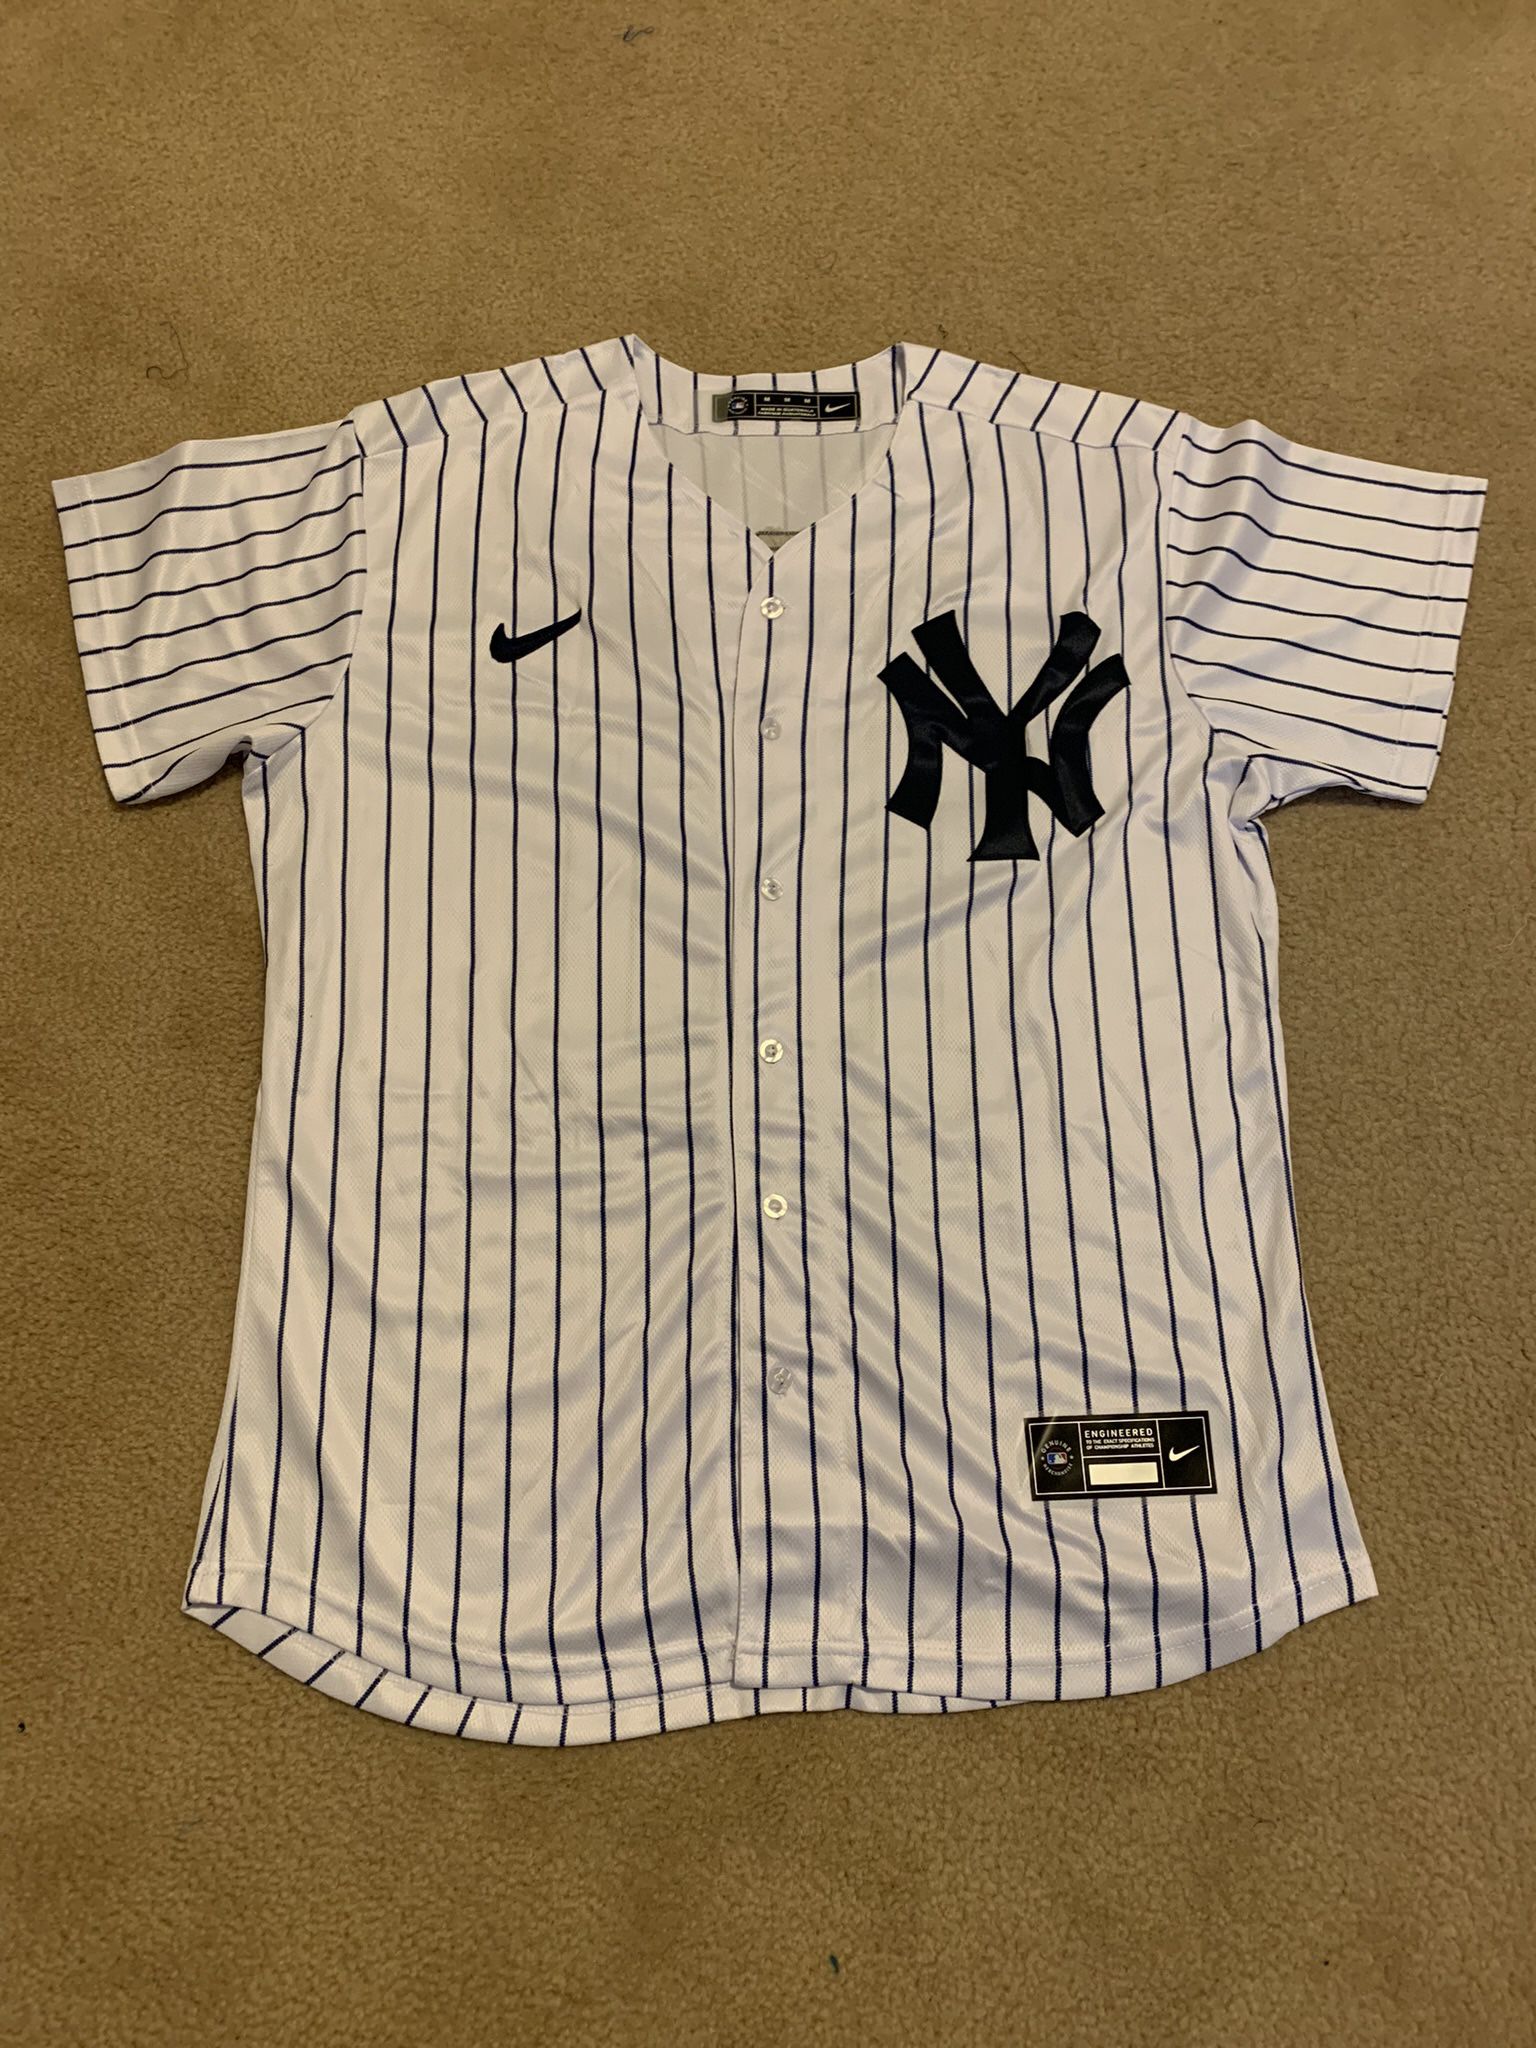 Personalized Yankees Baseball Jersey